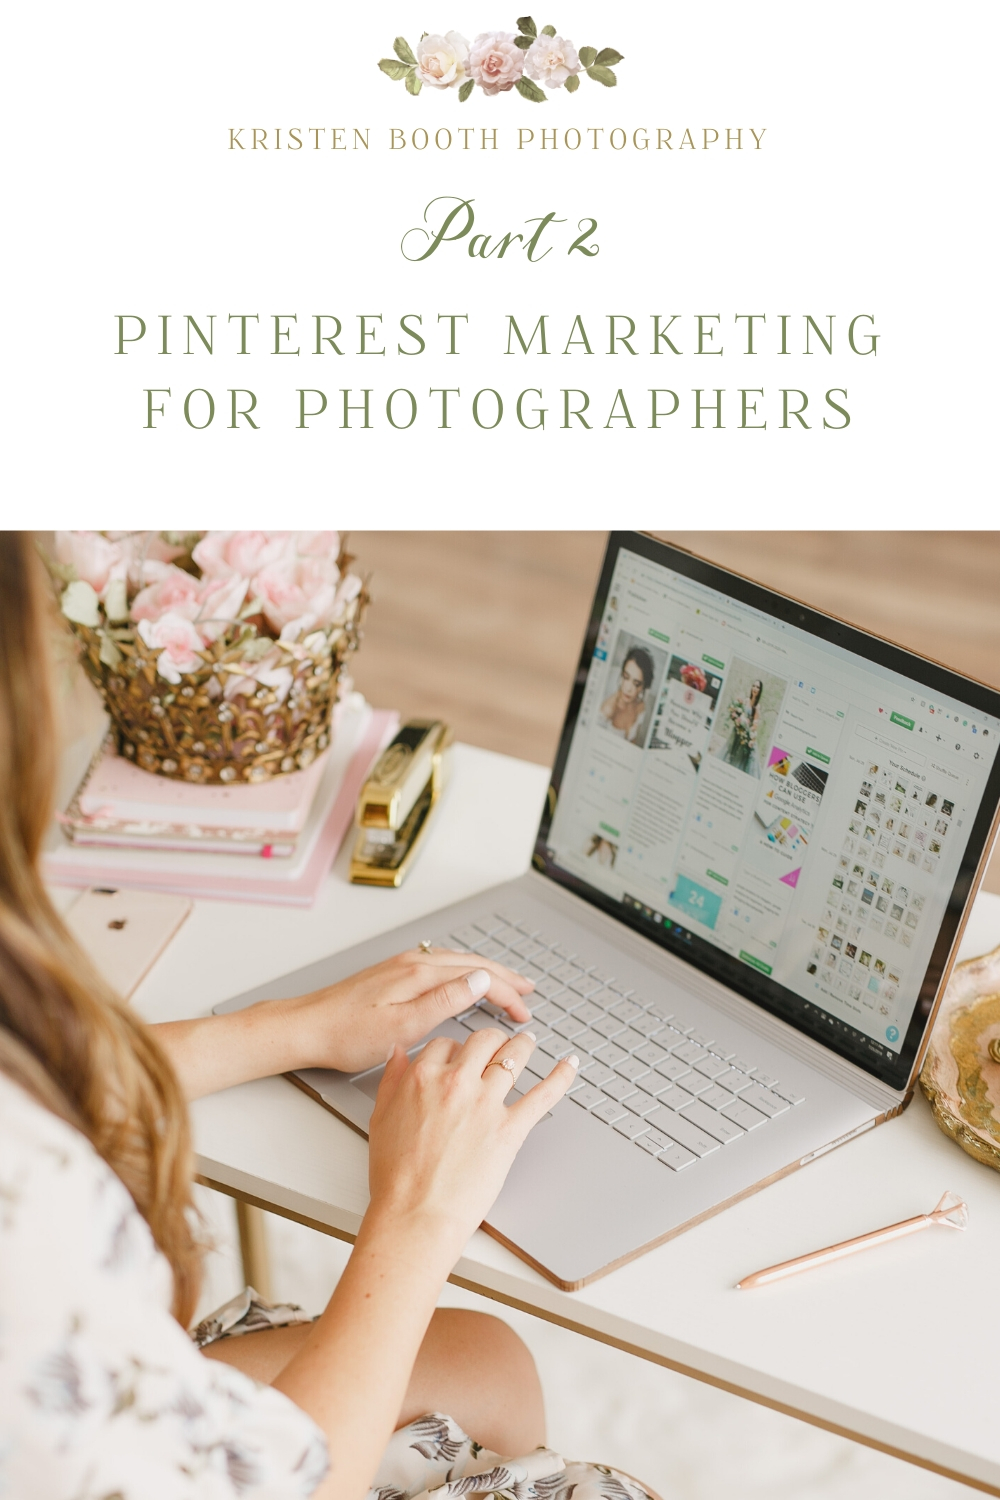 Tips for Pinterest Marketing for Photographers